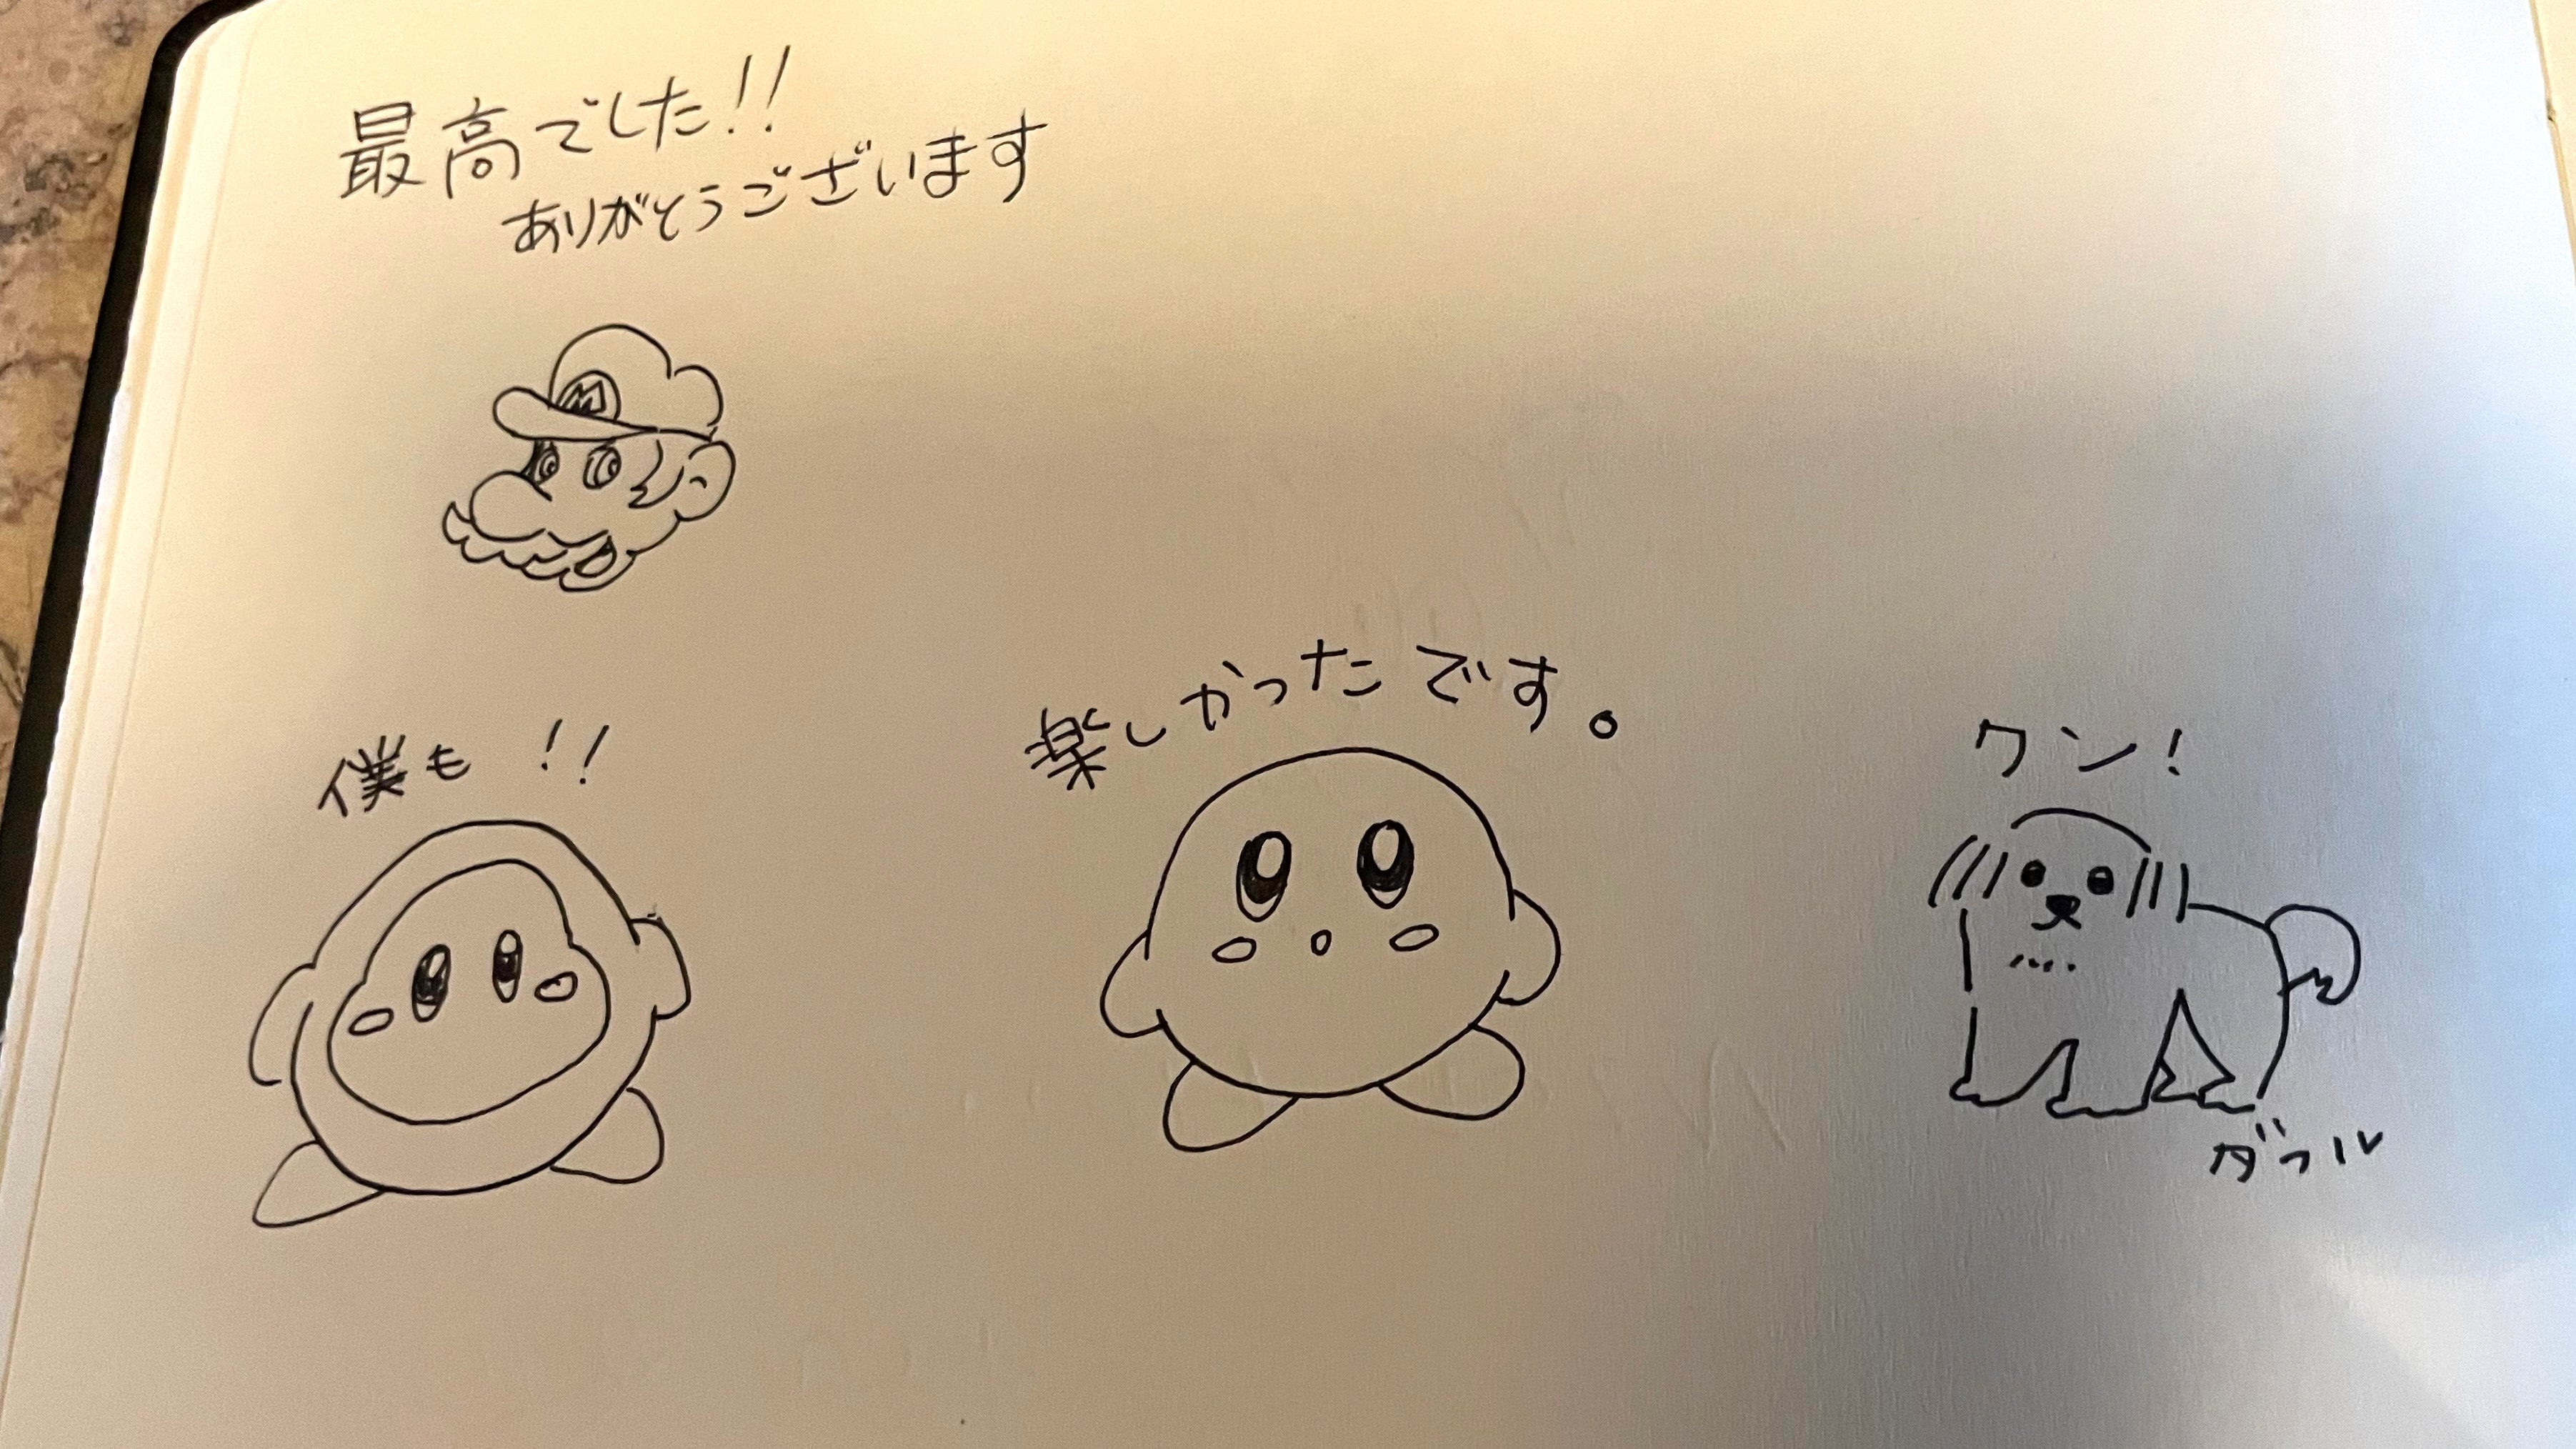 Un livre d'or d'hôtel, mais un avec les personnages Nintendo Mario et Kirby et une écriture japonaise les notant.